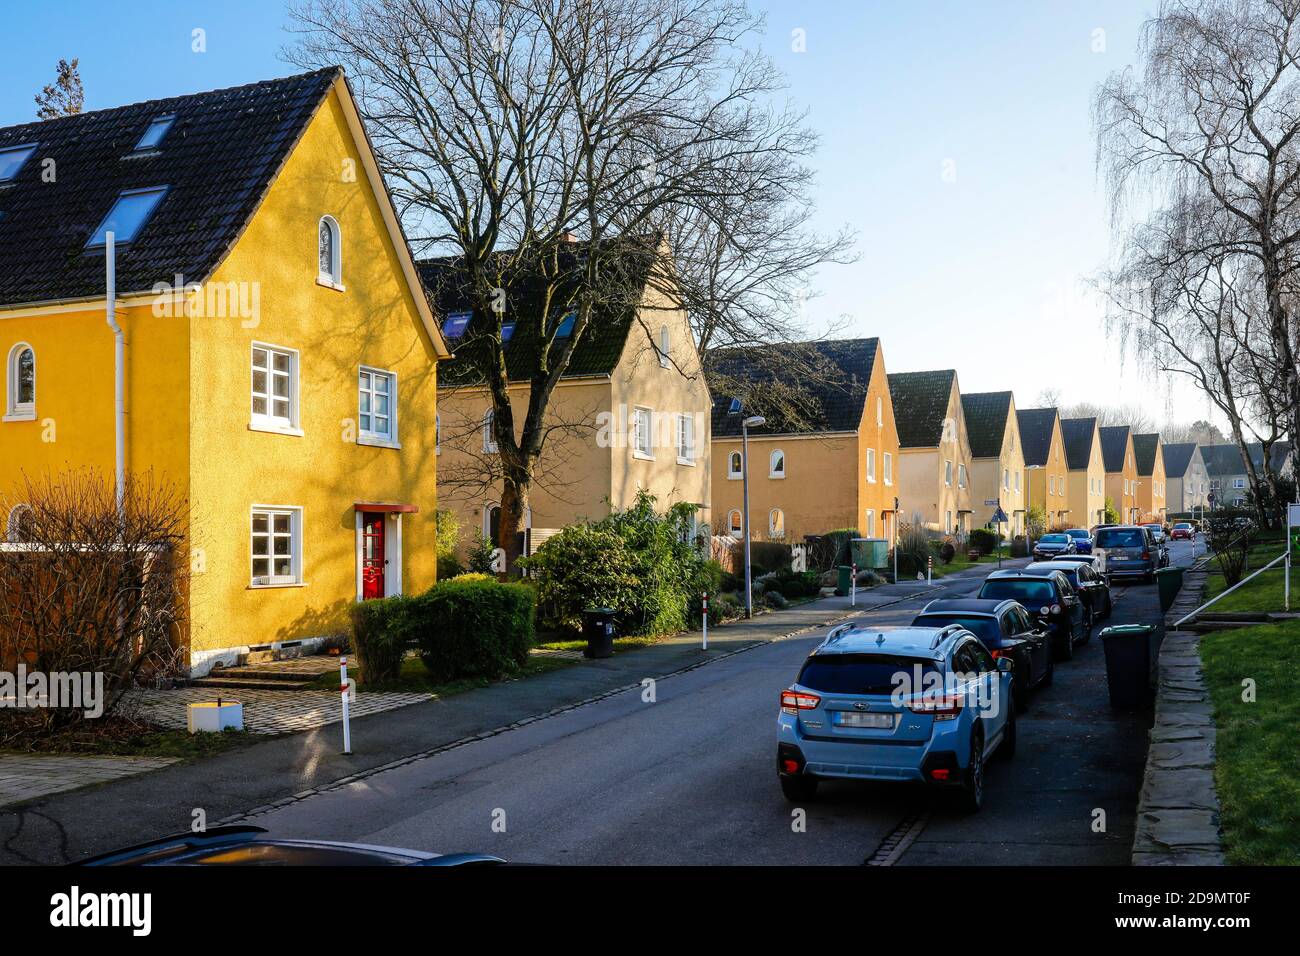 Typische Siedlungshäuser auf Heimatde, Mülheim an der Ruhr, Ruhrgebiet, Nordrhein-Westfalen, Deutschland Stockfoto